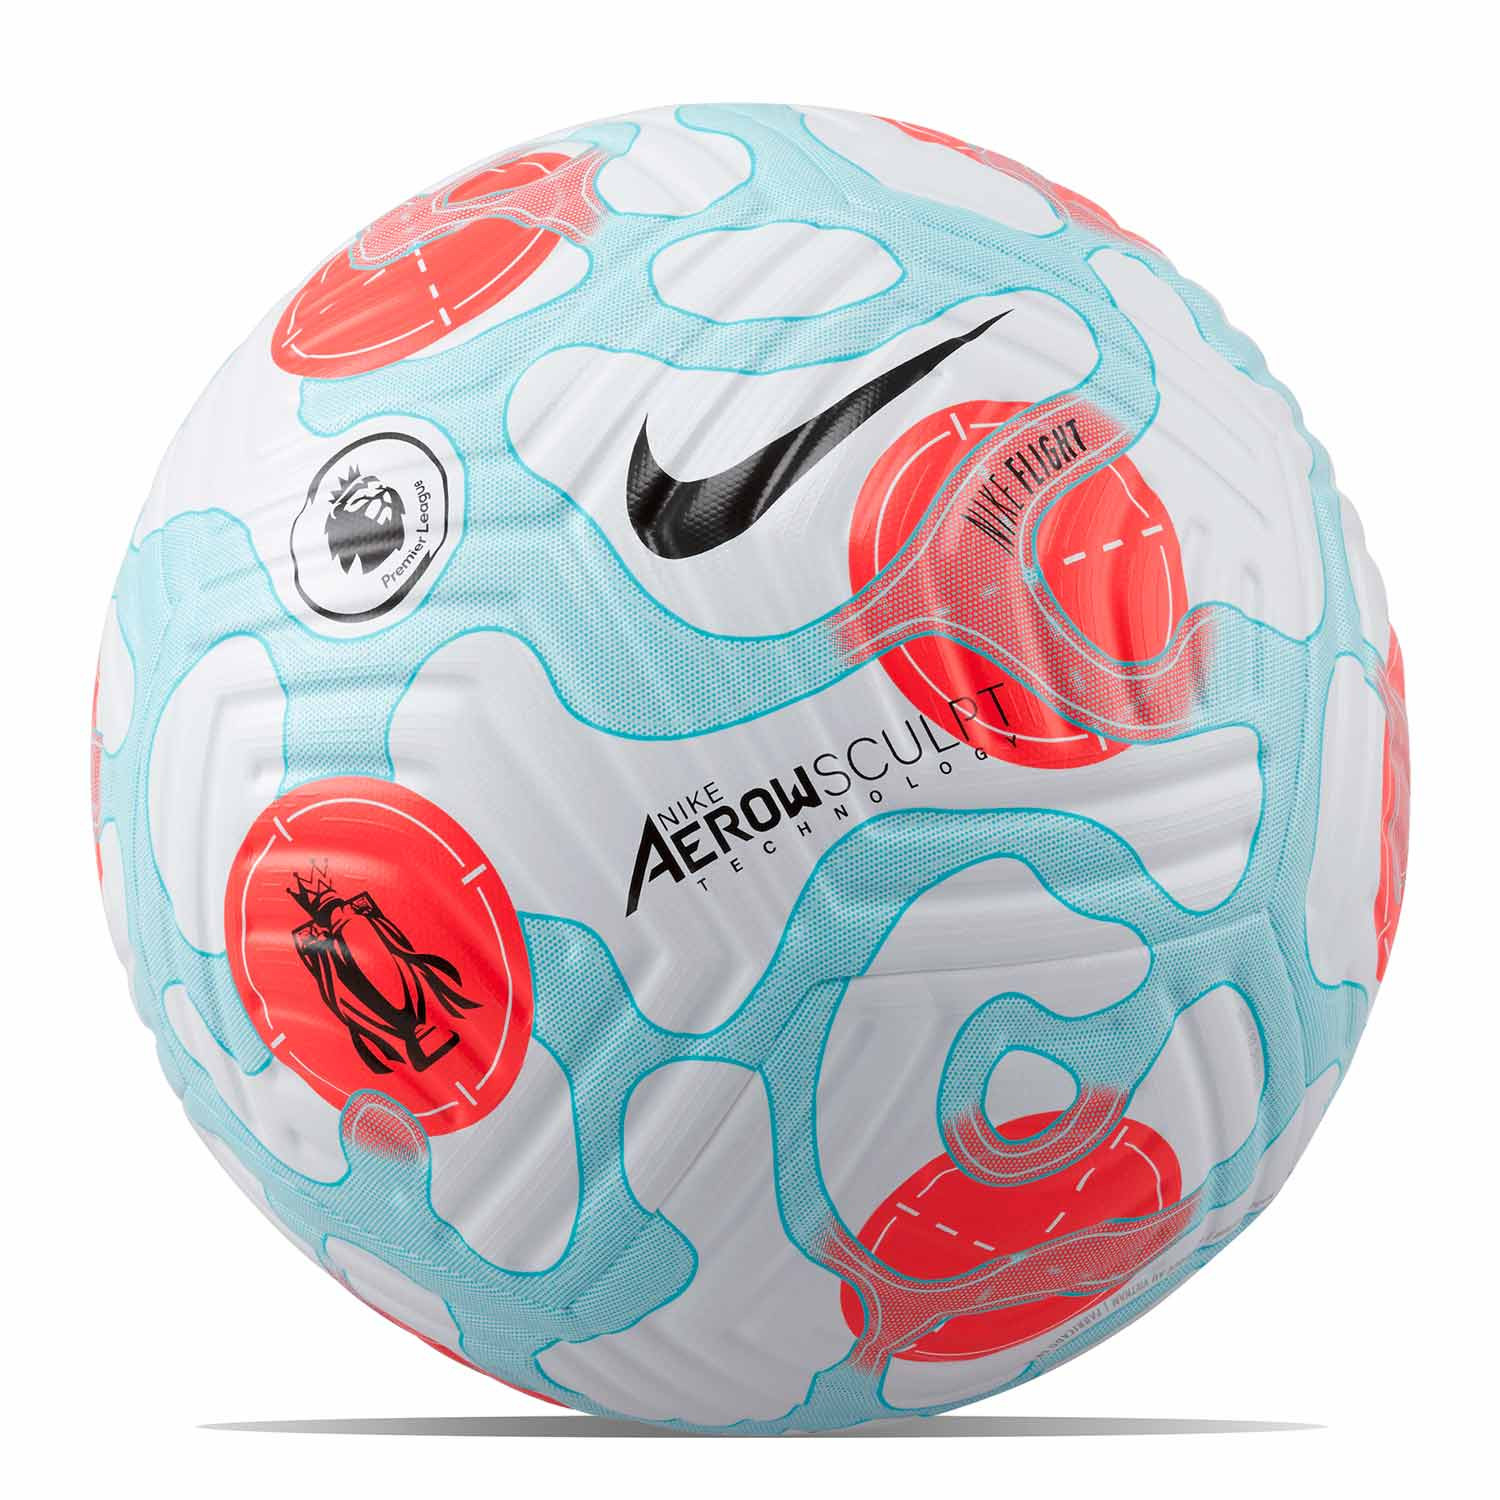 Balón de fútbol Nike League 3rd talla 5 futbolmania